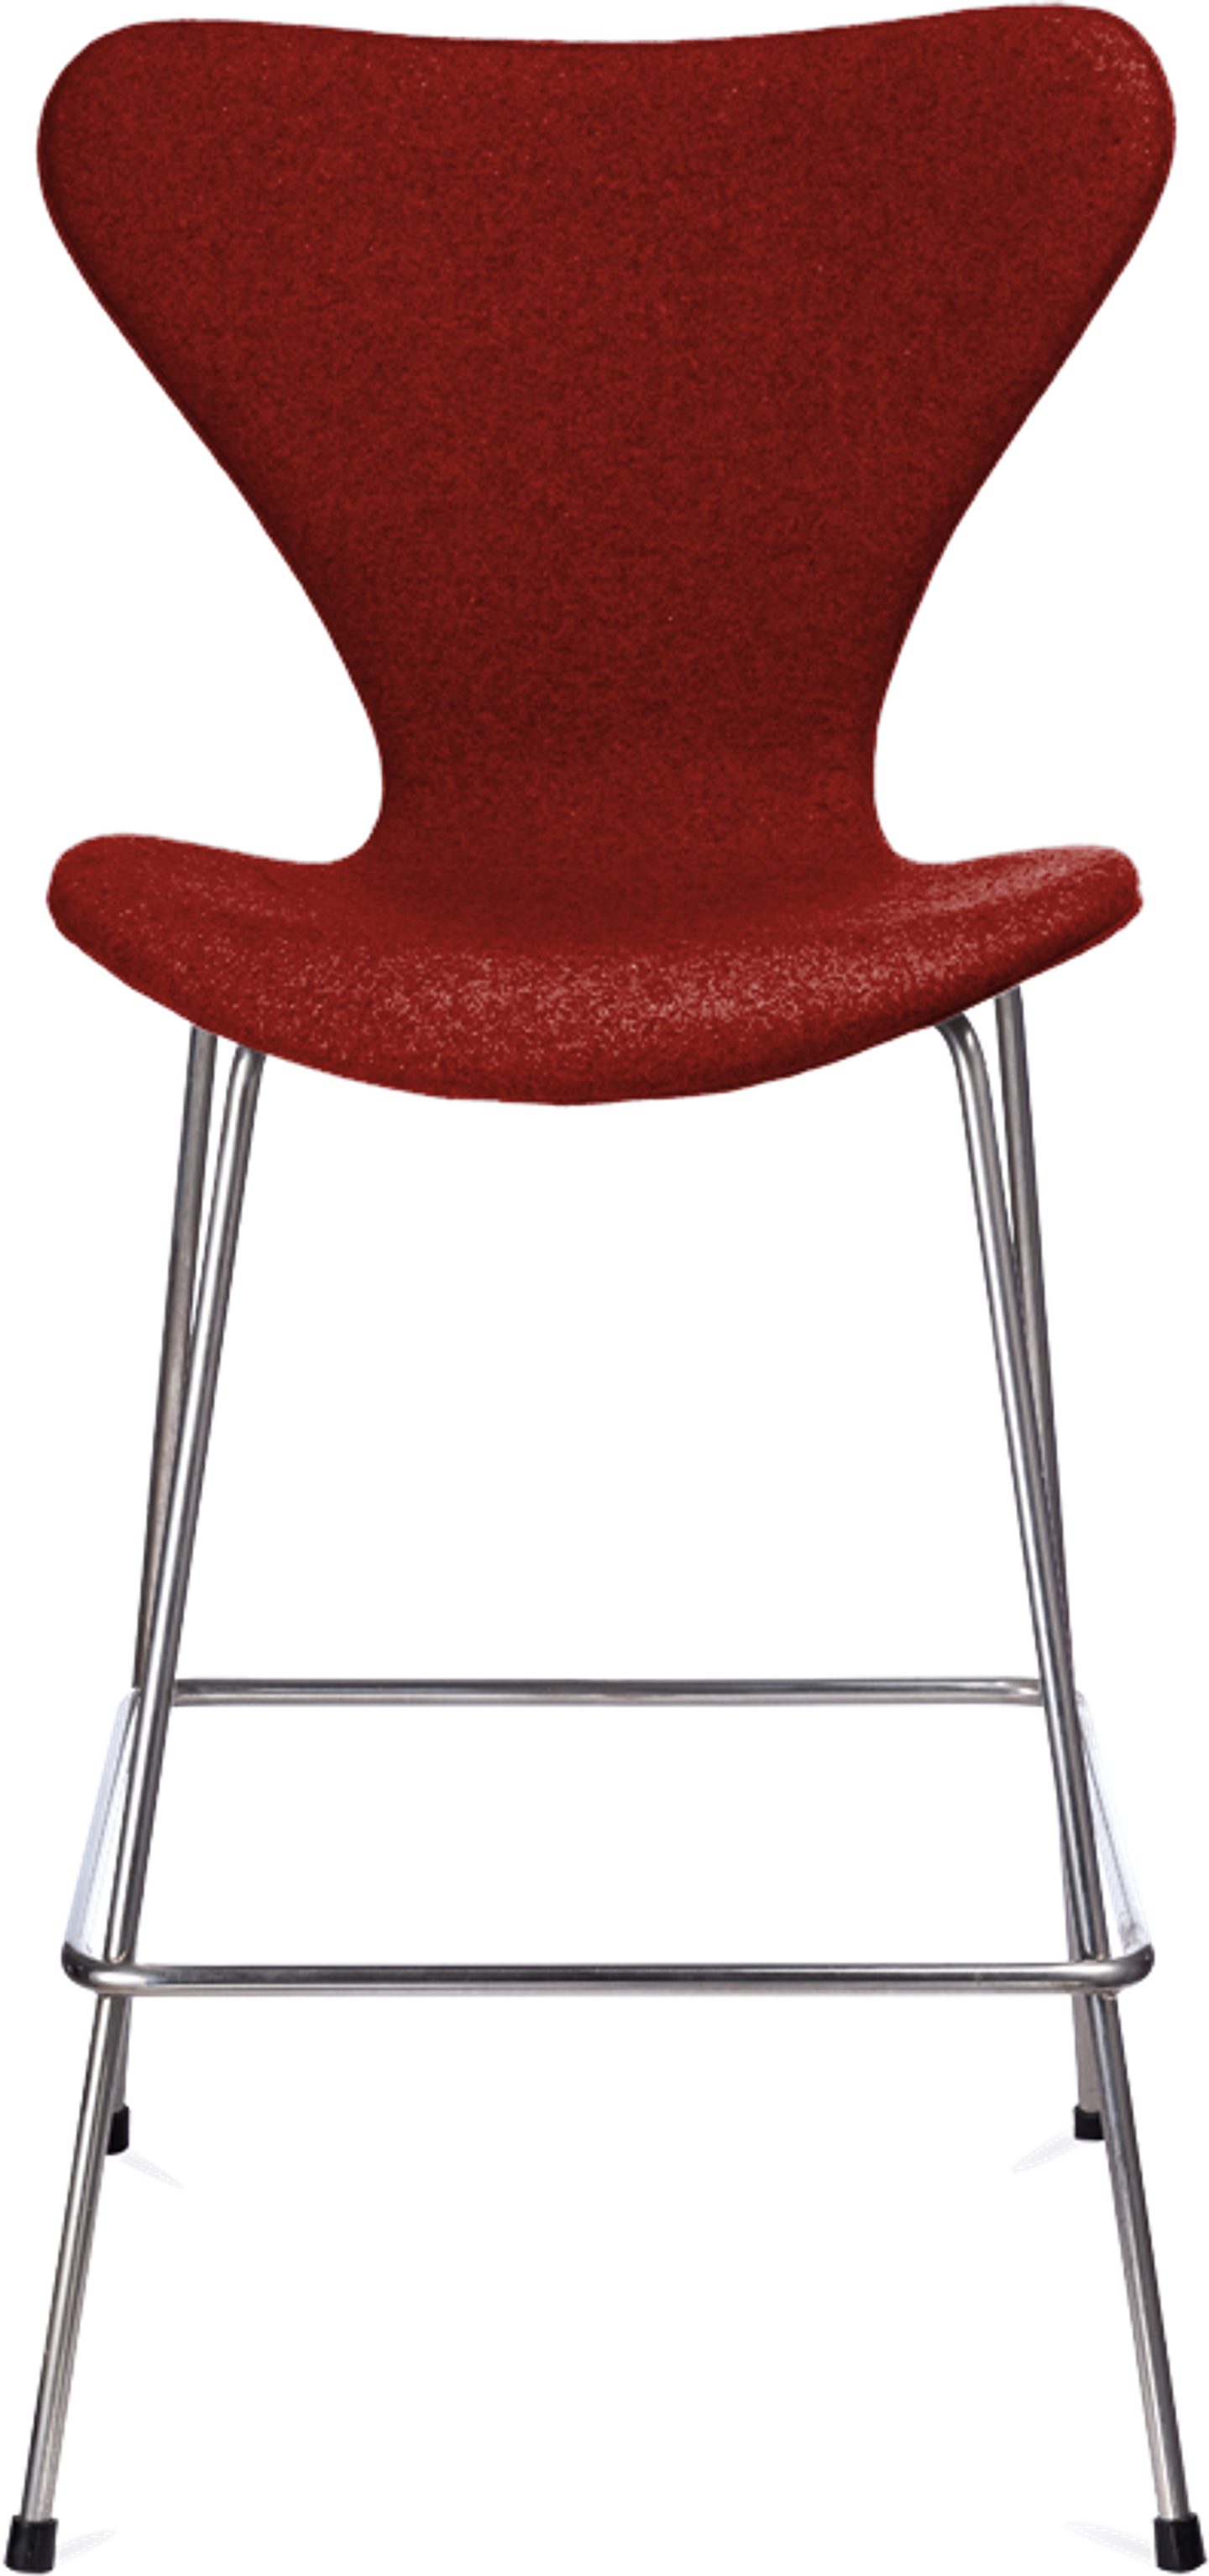 Serie 7 barstol stoppad med klädsel Red image.